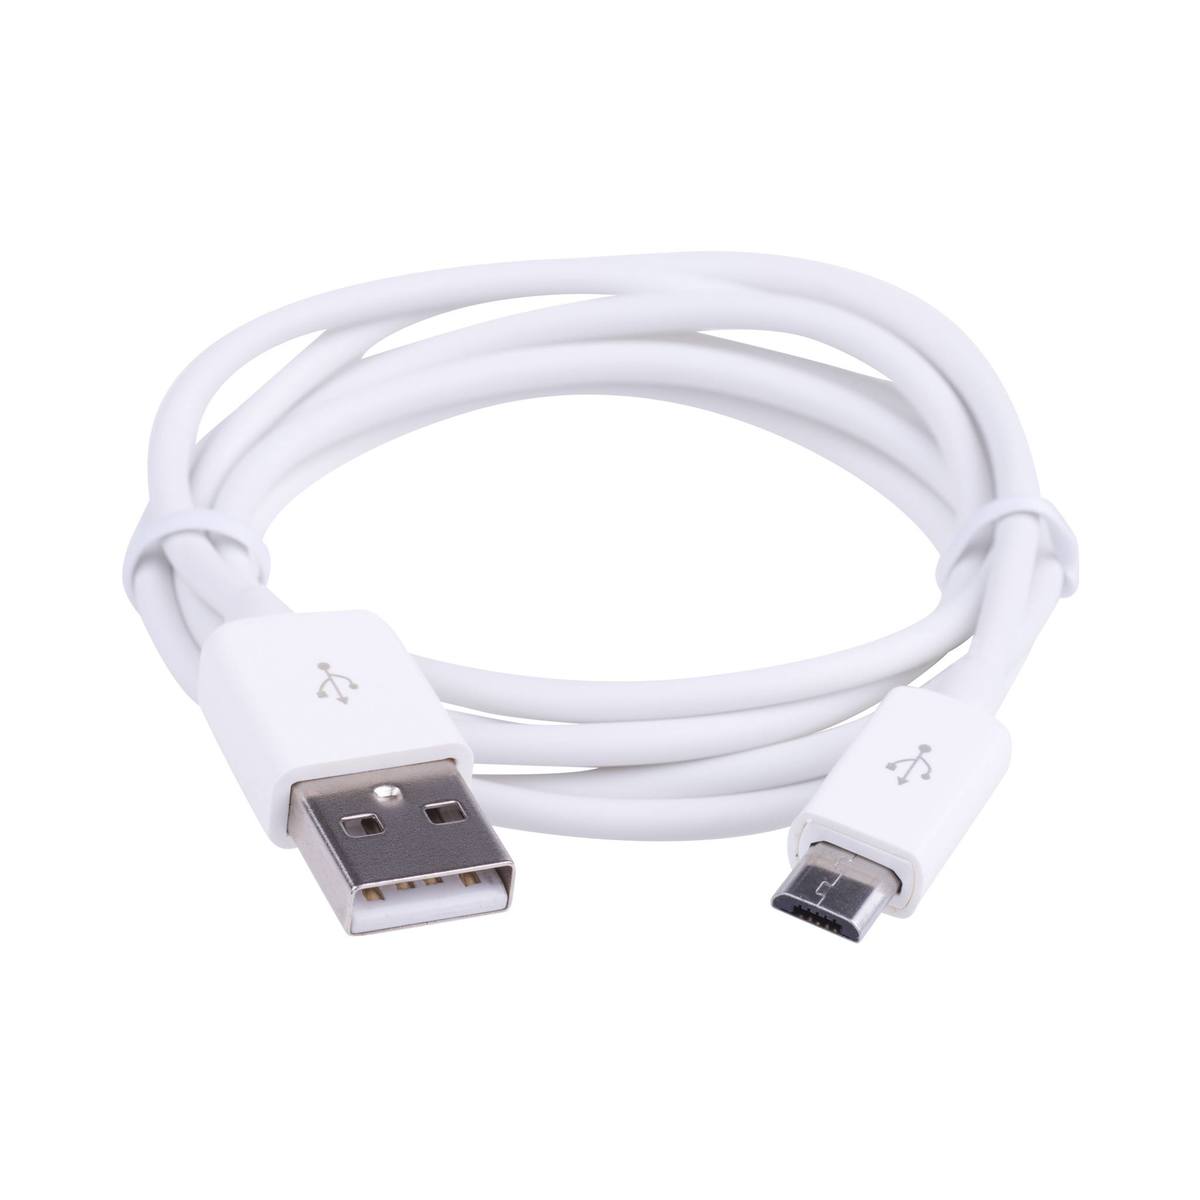 Se Mikro USB - 1 m kabel, Hvid hos Powerbanken.dk